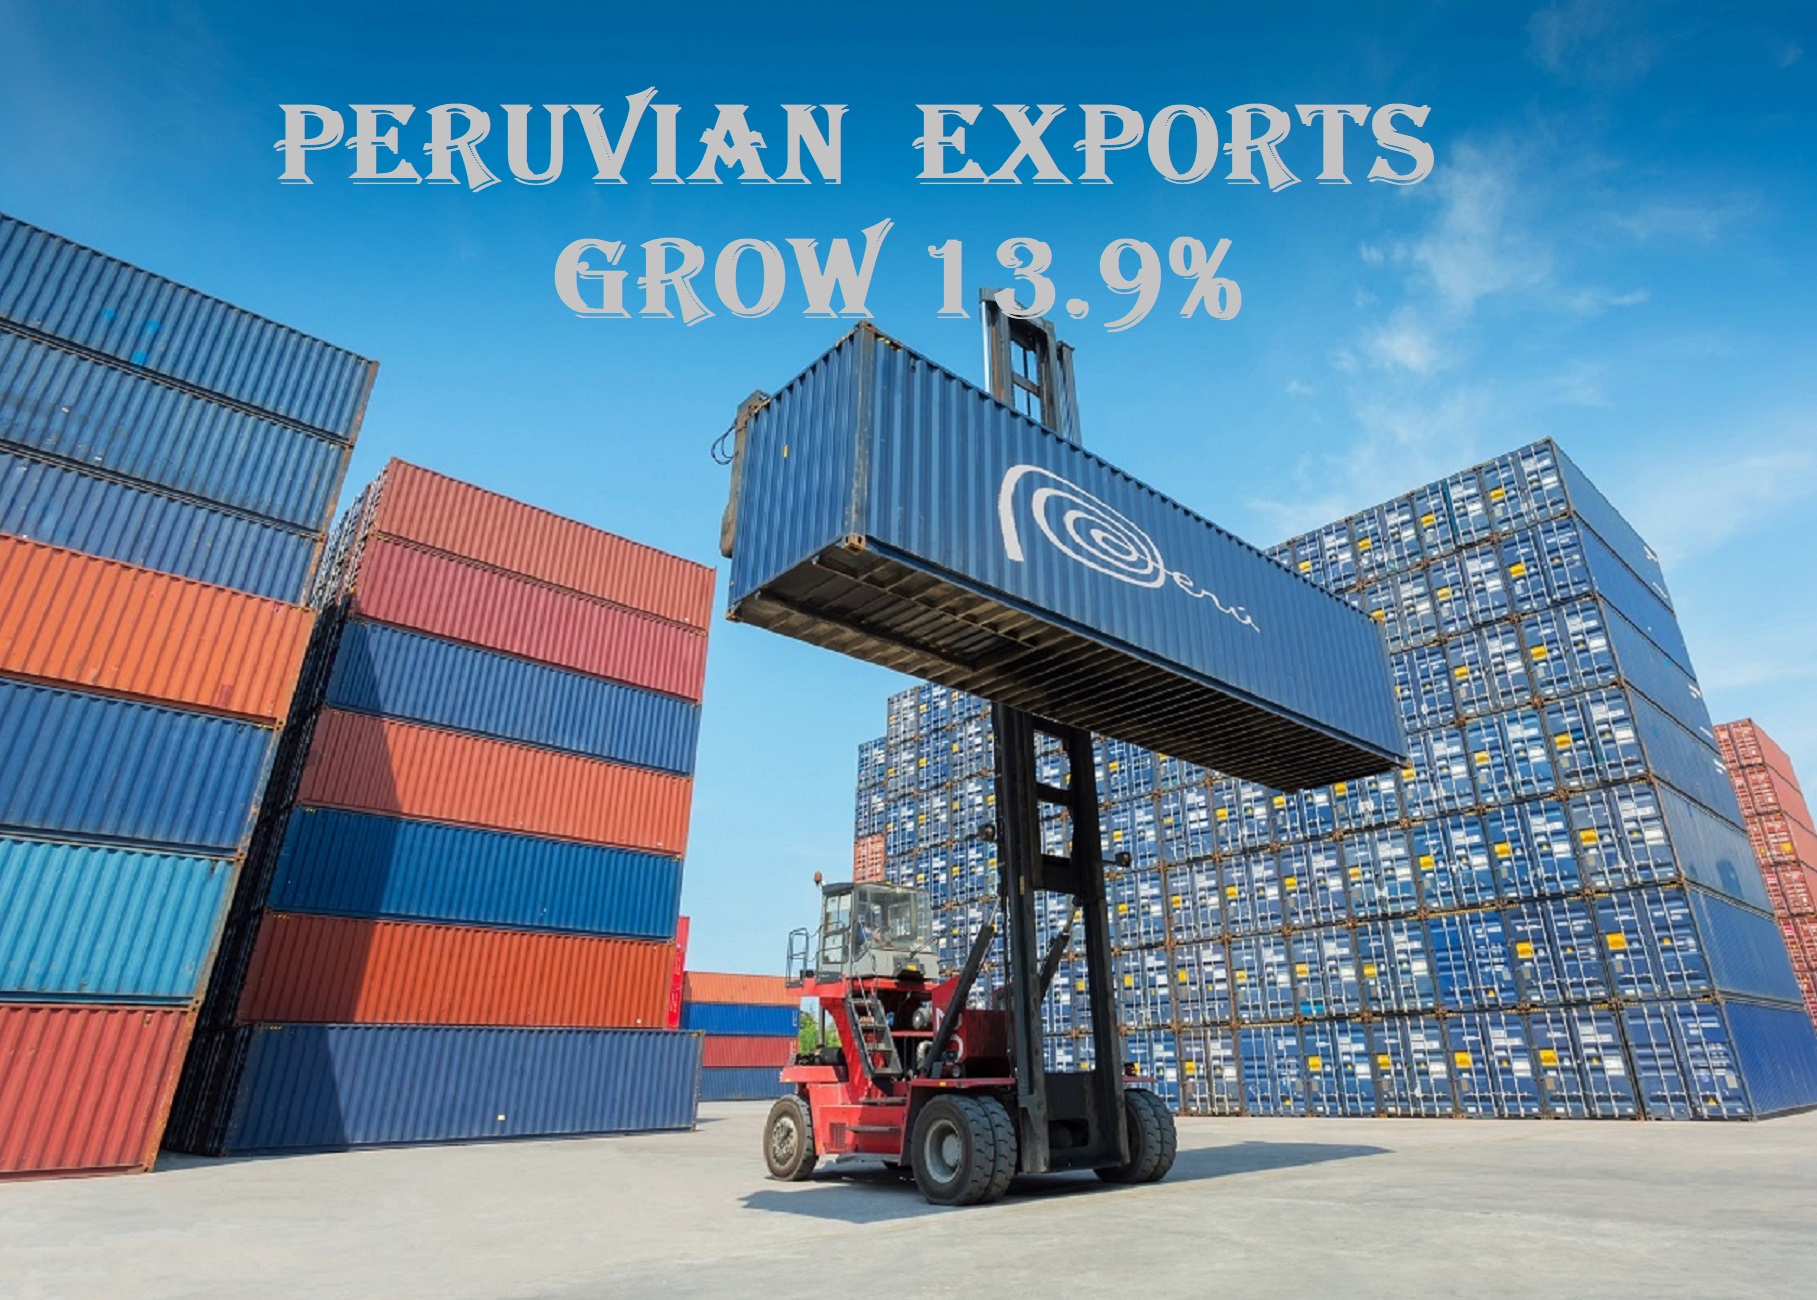 Empresas exportadoras peruanas crecen 13.9% solo en febrero último fueron 3 mil 334 las que llevaron la oferta peruana al mundo en agroindustria, minería y químico.